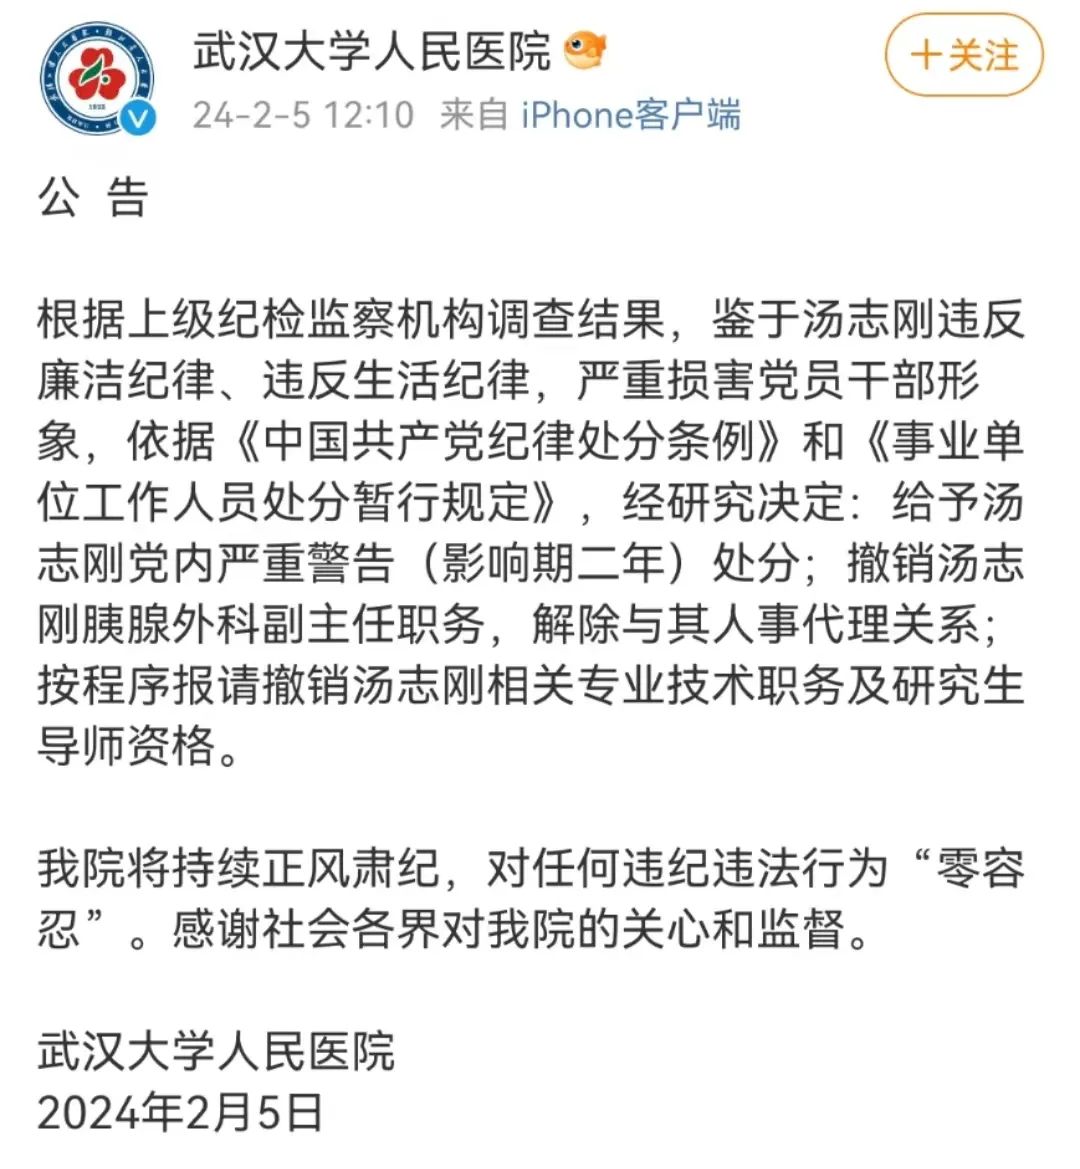 武汉大学人民医院官方微博截图。